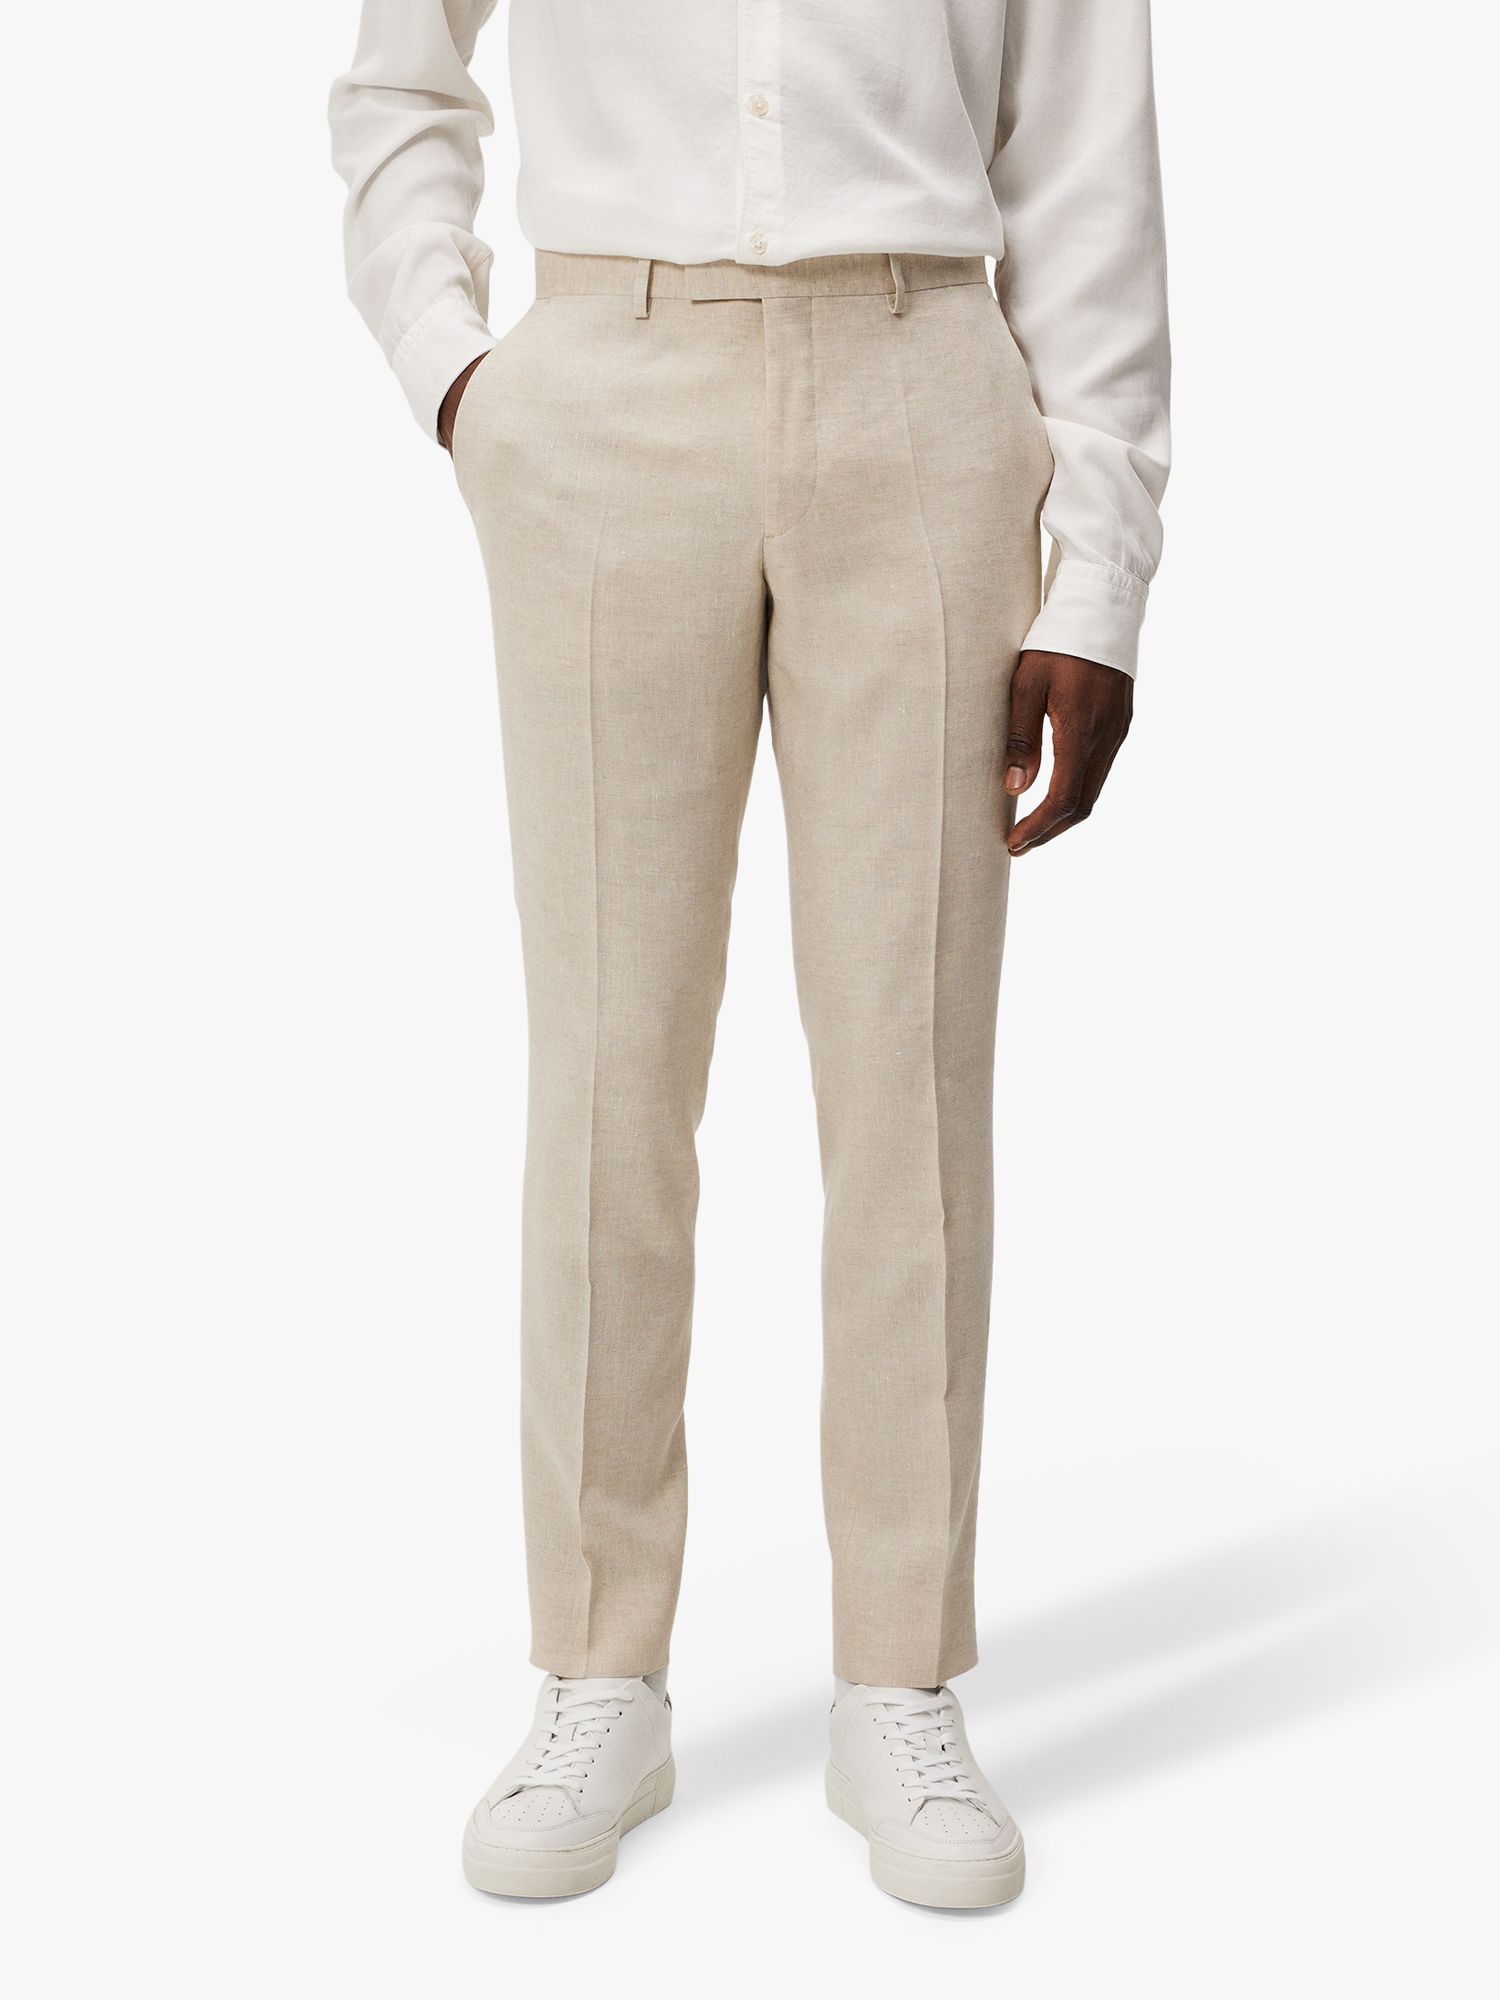 J.Lindeberg Grant Super Linen Trousers, Moonbeam, 32R